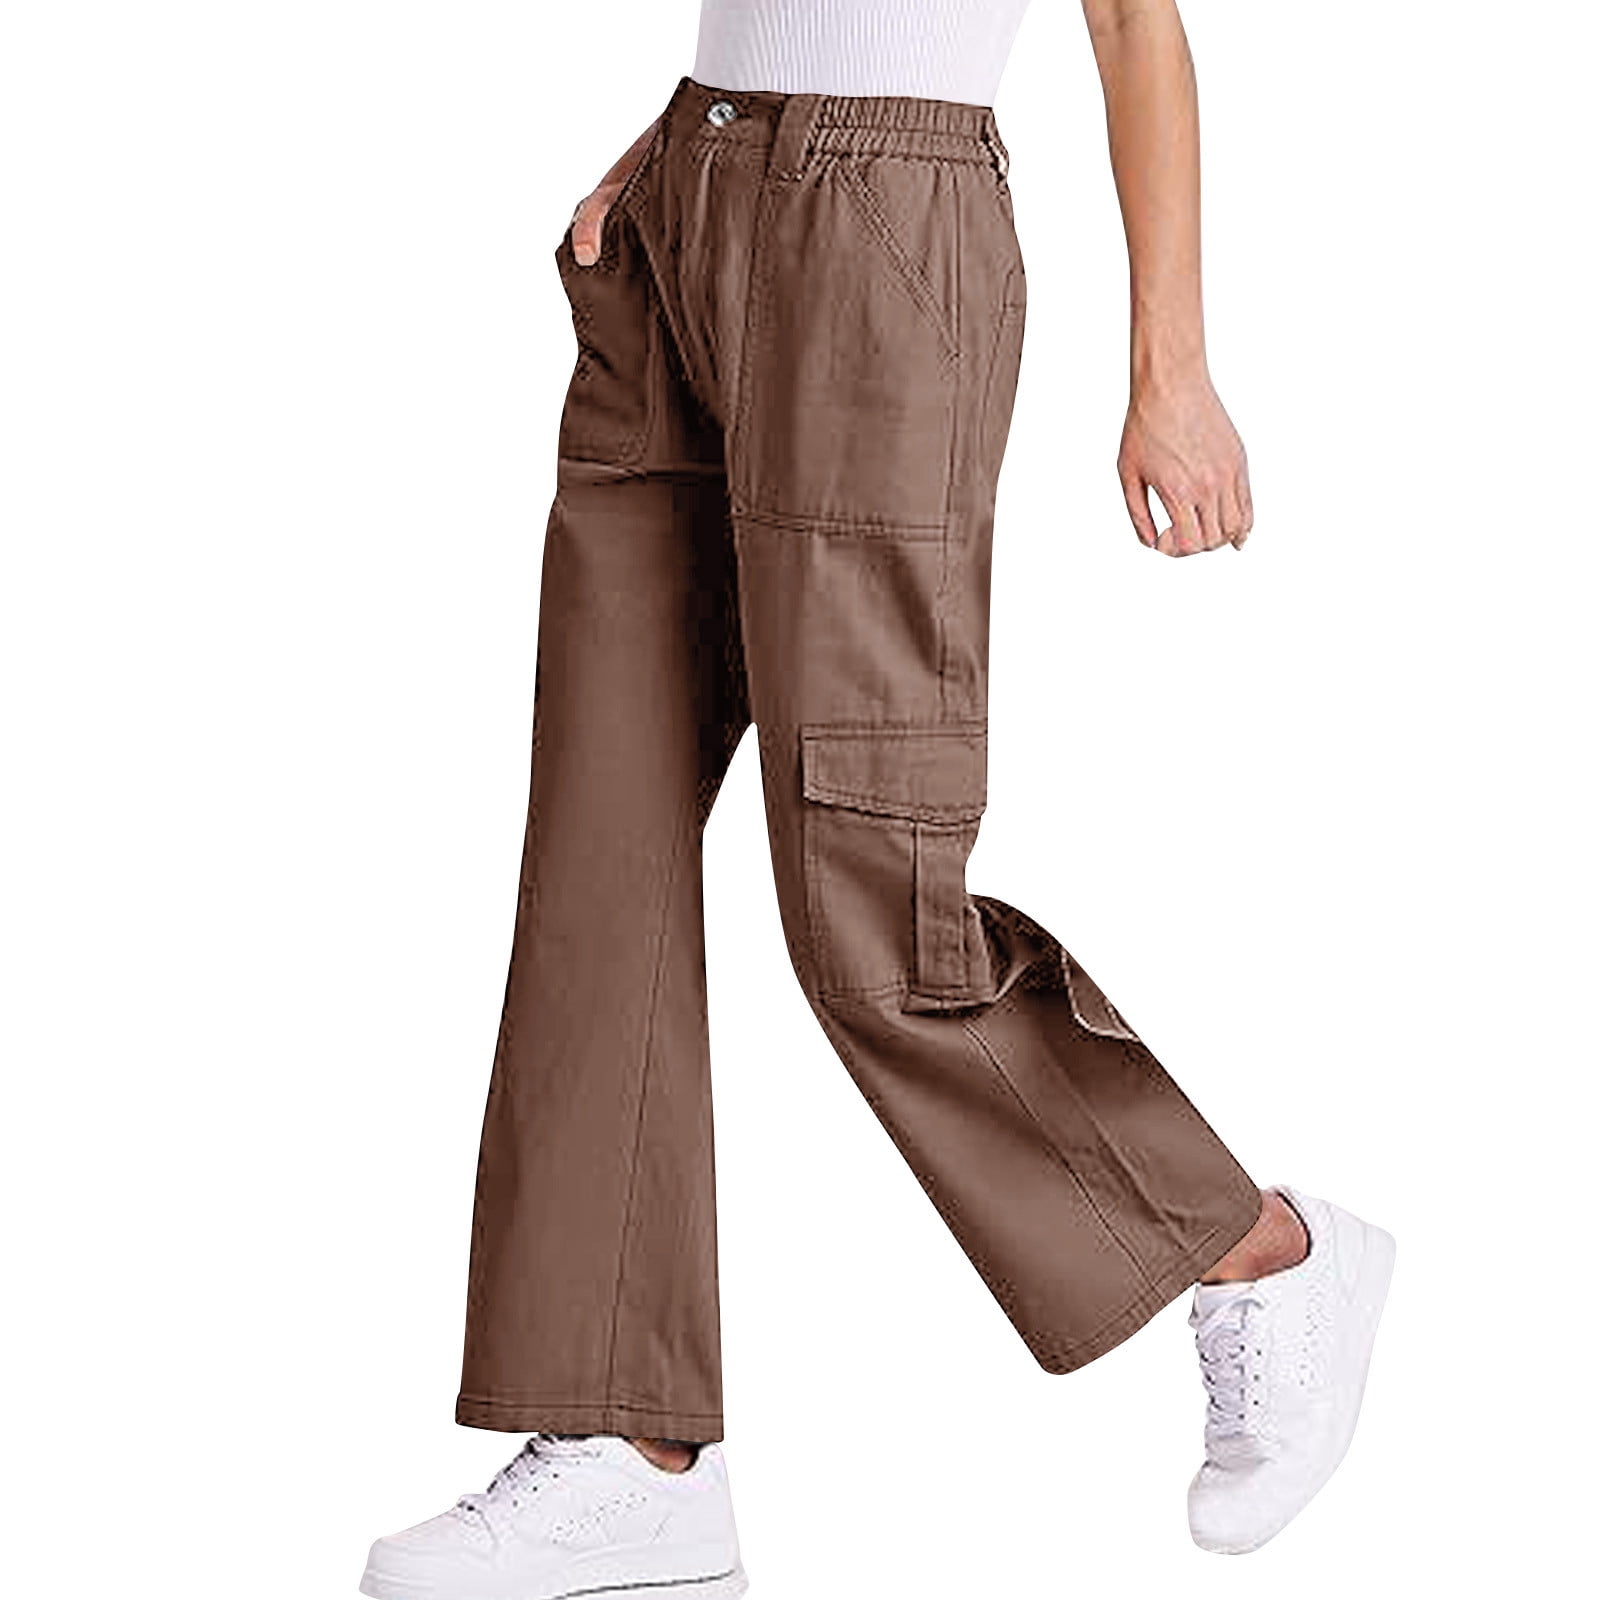 White Techwear Ankle Length Cargo Pants for Men ☢️ ATLAS 1